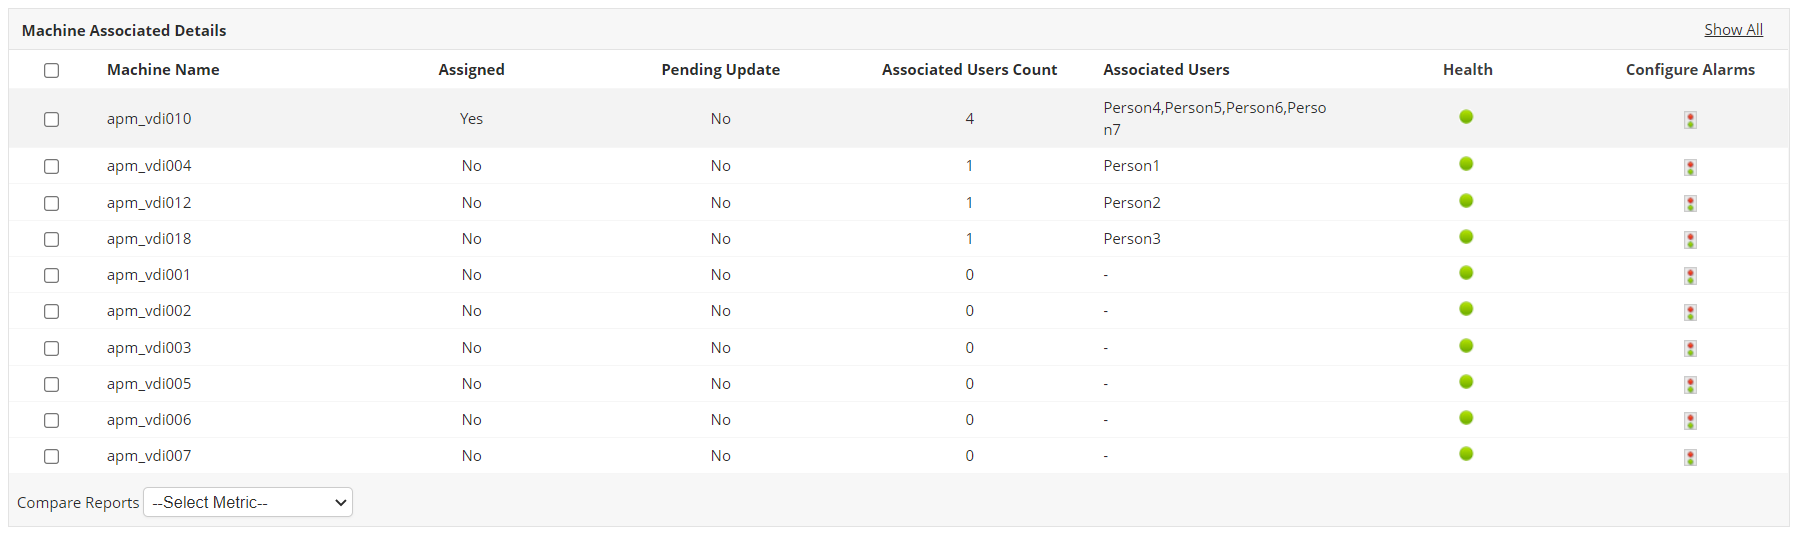 Dashboard de monitoreo de detalles asociados a equipos Citrix Virtual Apps and Desktops - Applications Manager